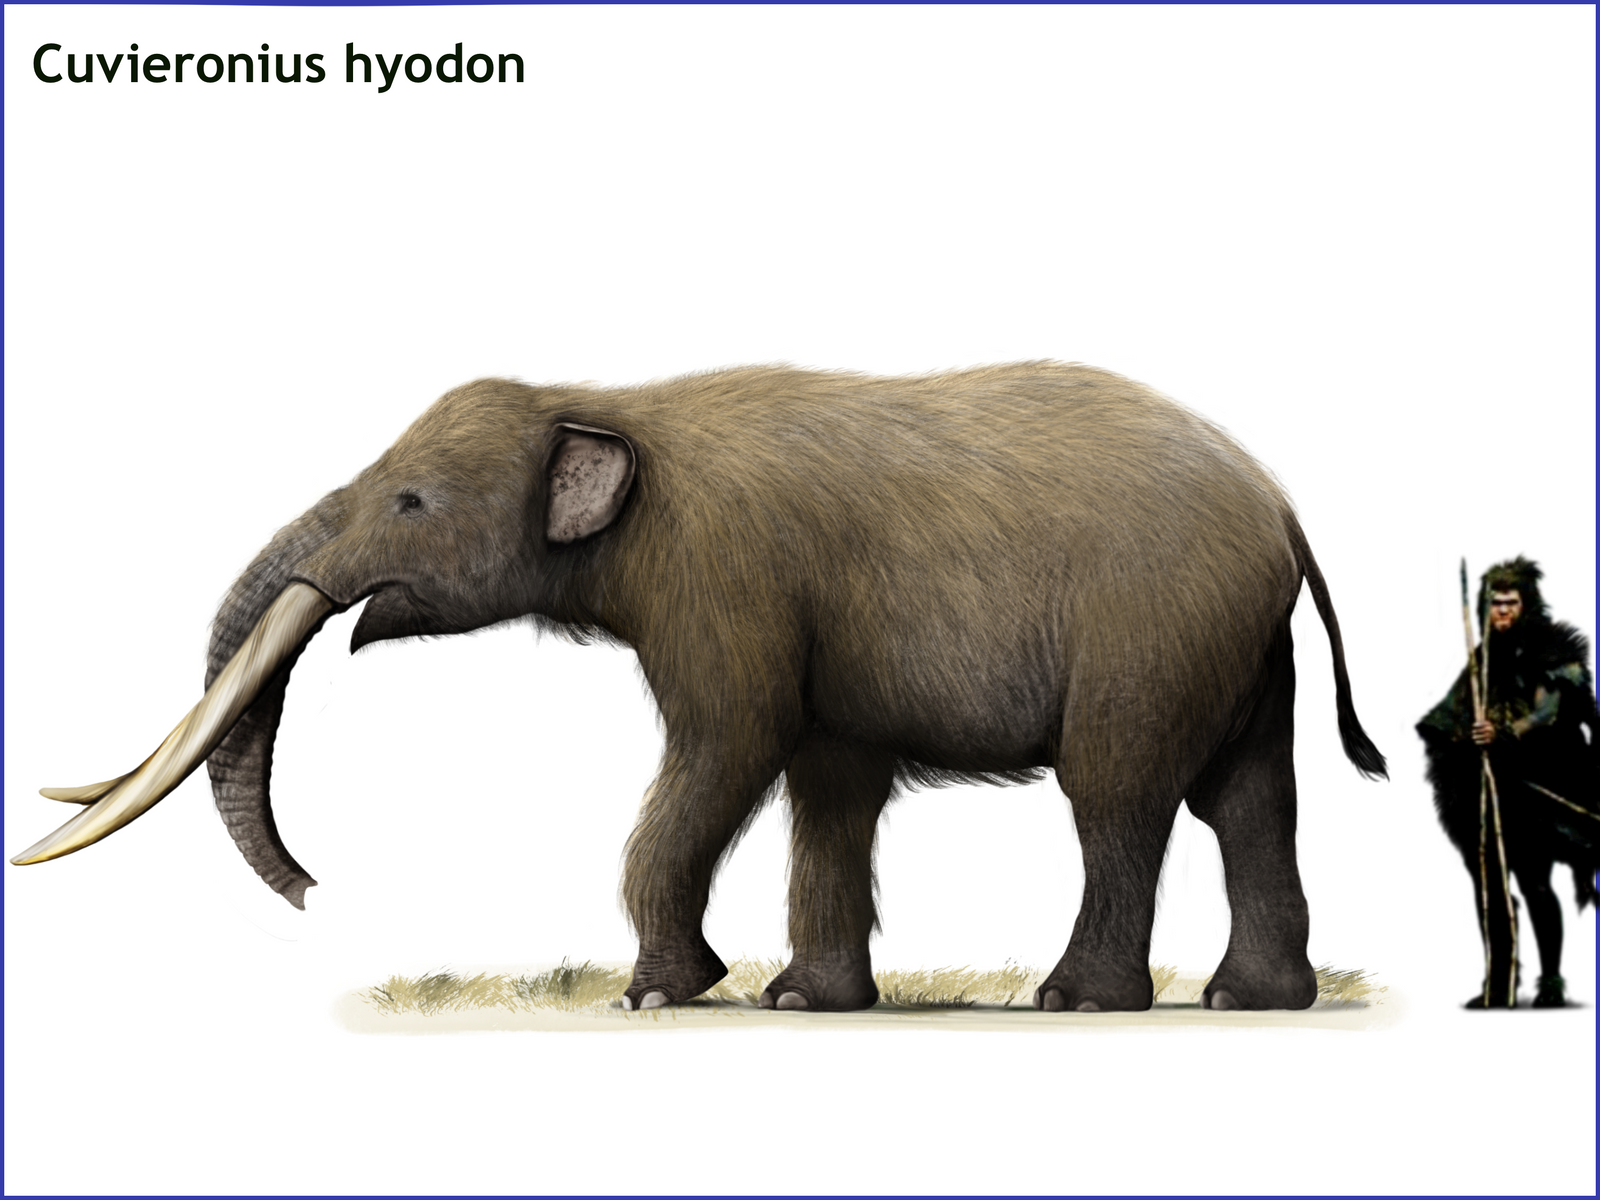 Cuvieronius hyodon by cisiopurple on DeviantArt